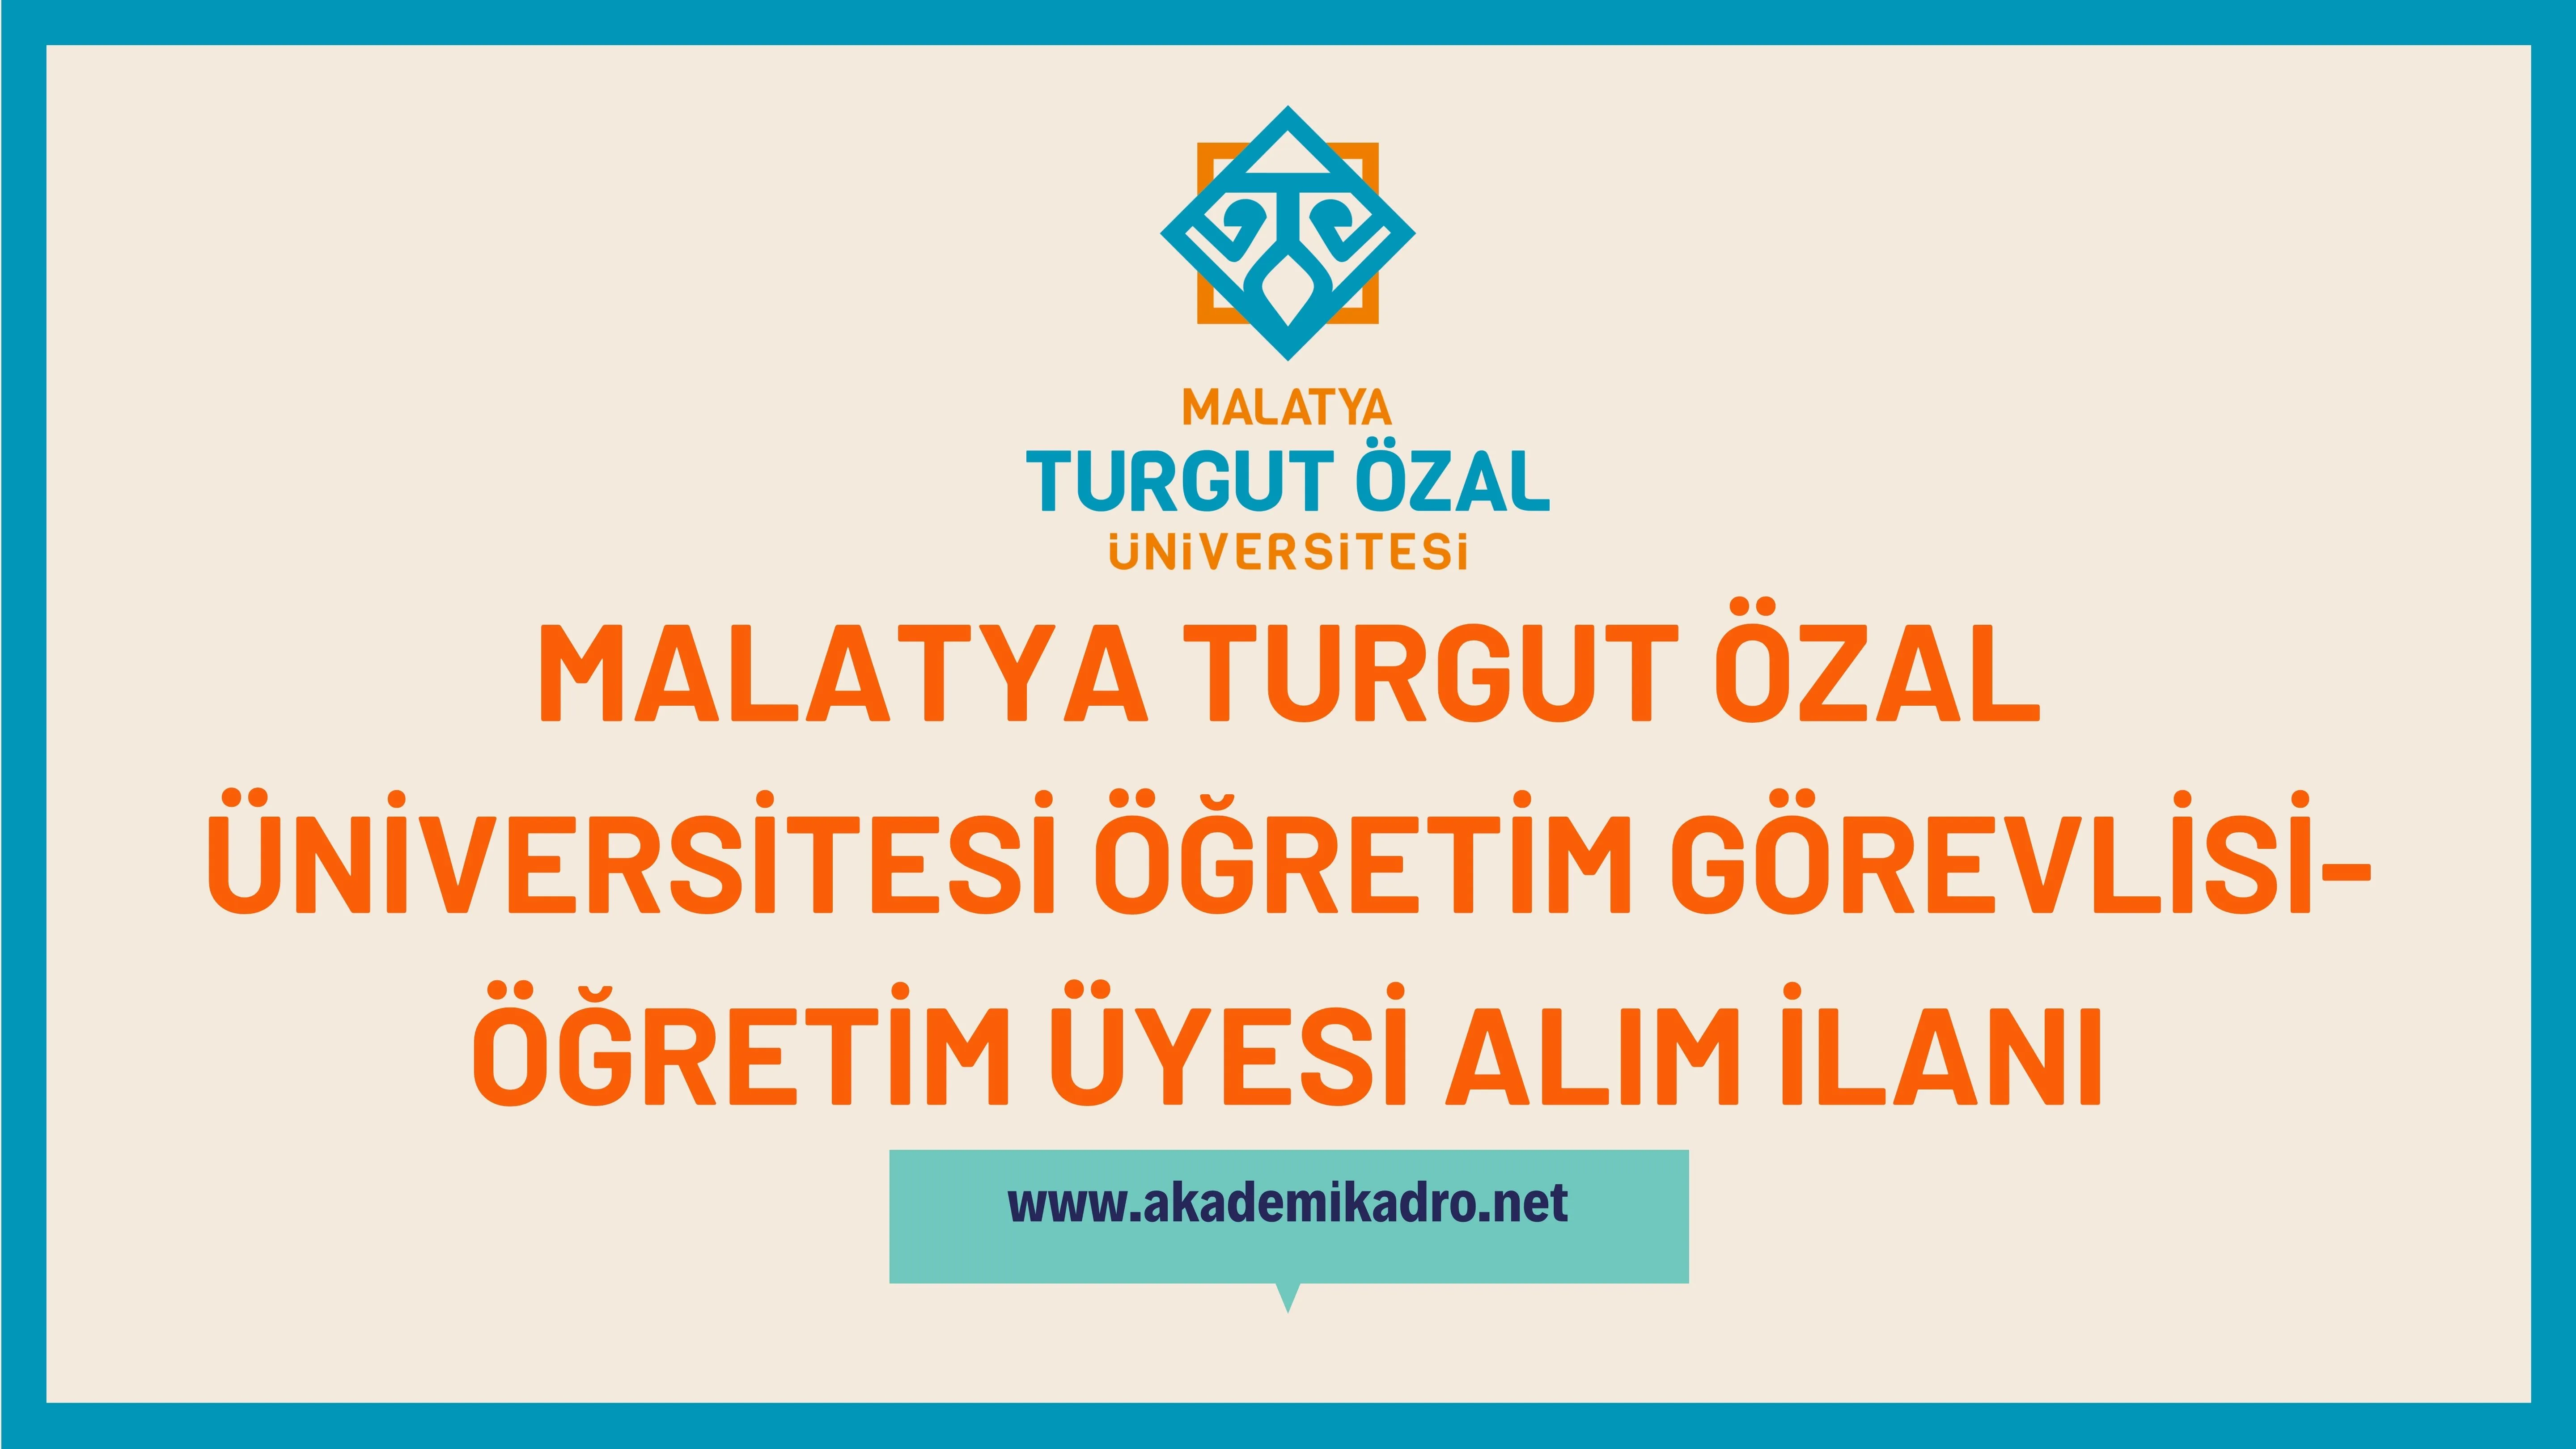 Malatya Turgut Özal Üniversitesi Öğretim görevlisi ve Öğretim üyesi olmak üzere 29 Öğretim elemanı alacak.